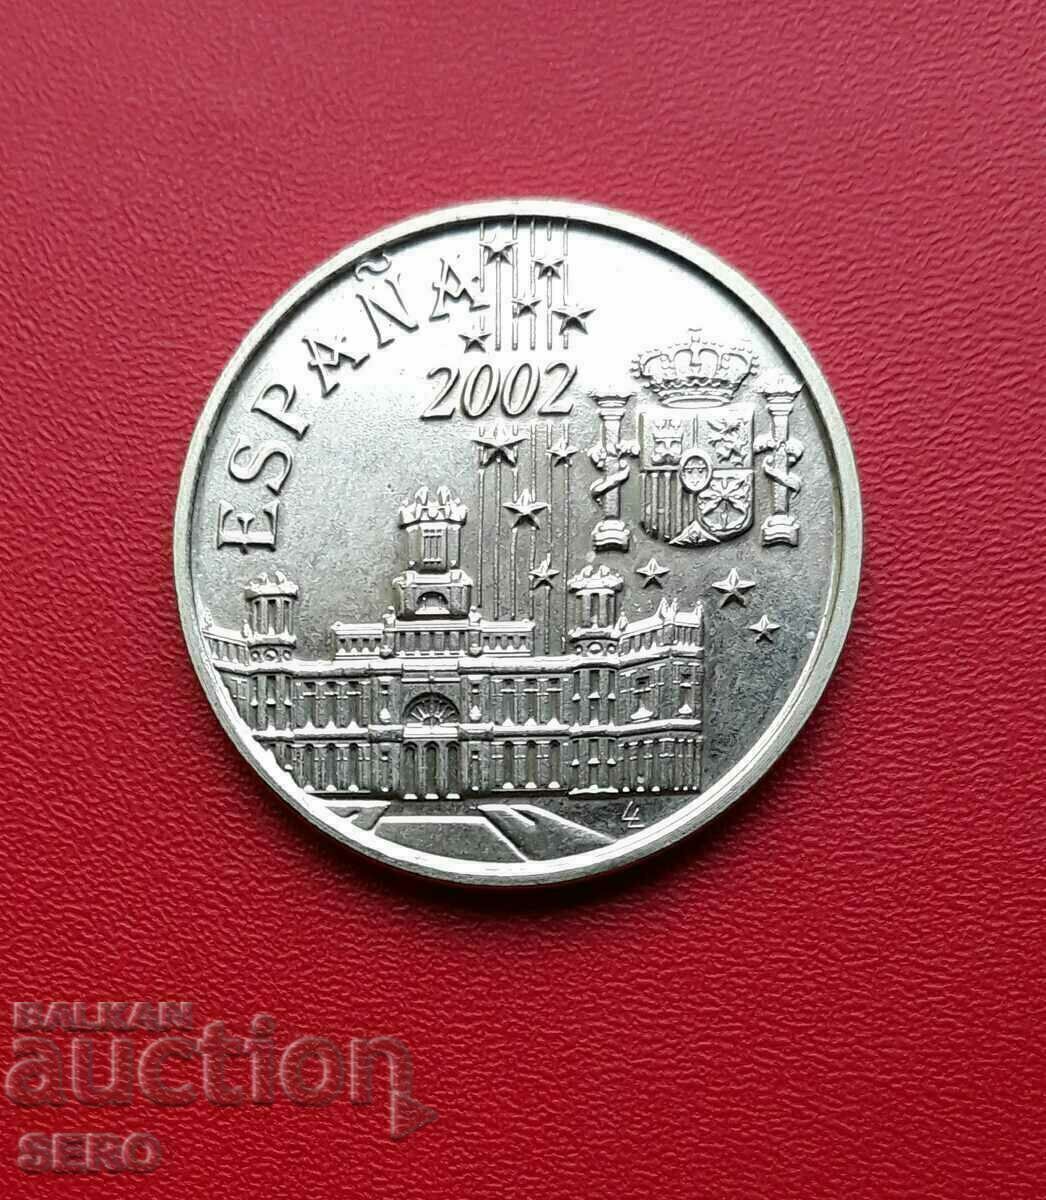 Spain-medal 2002-United Europe